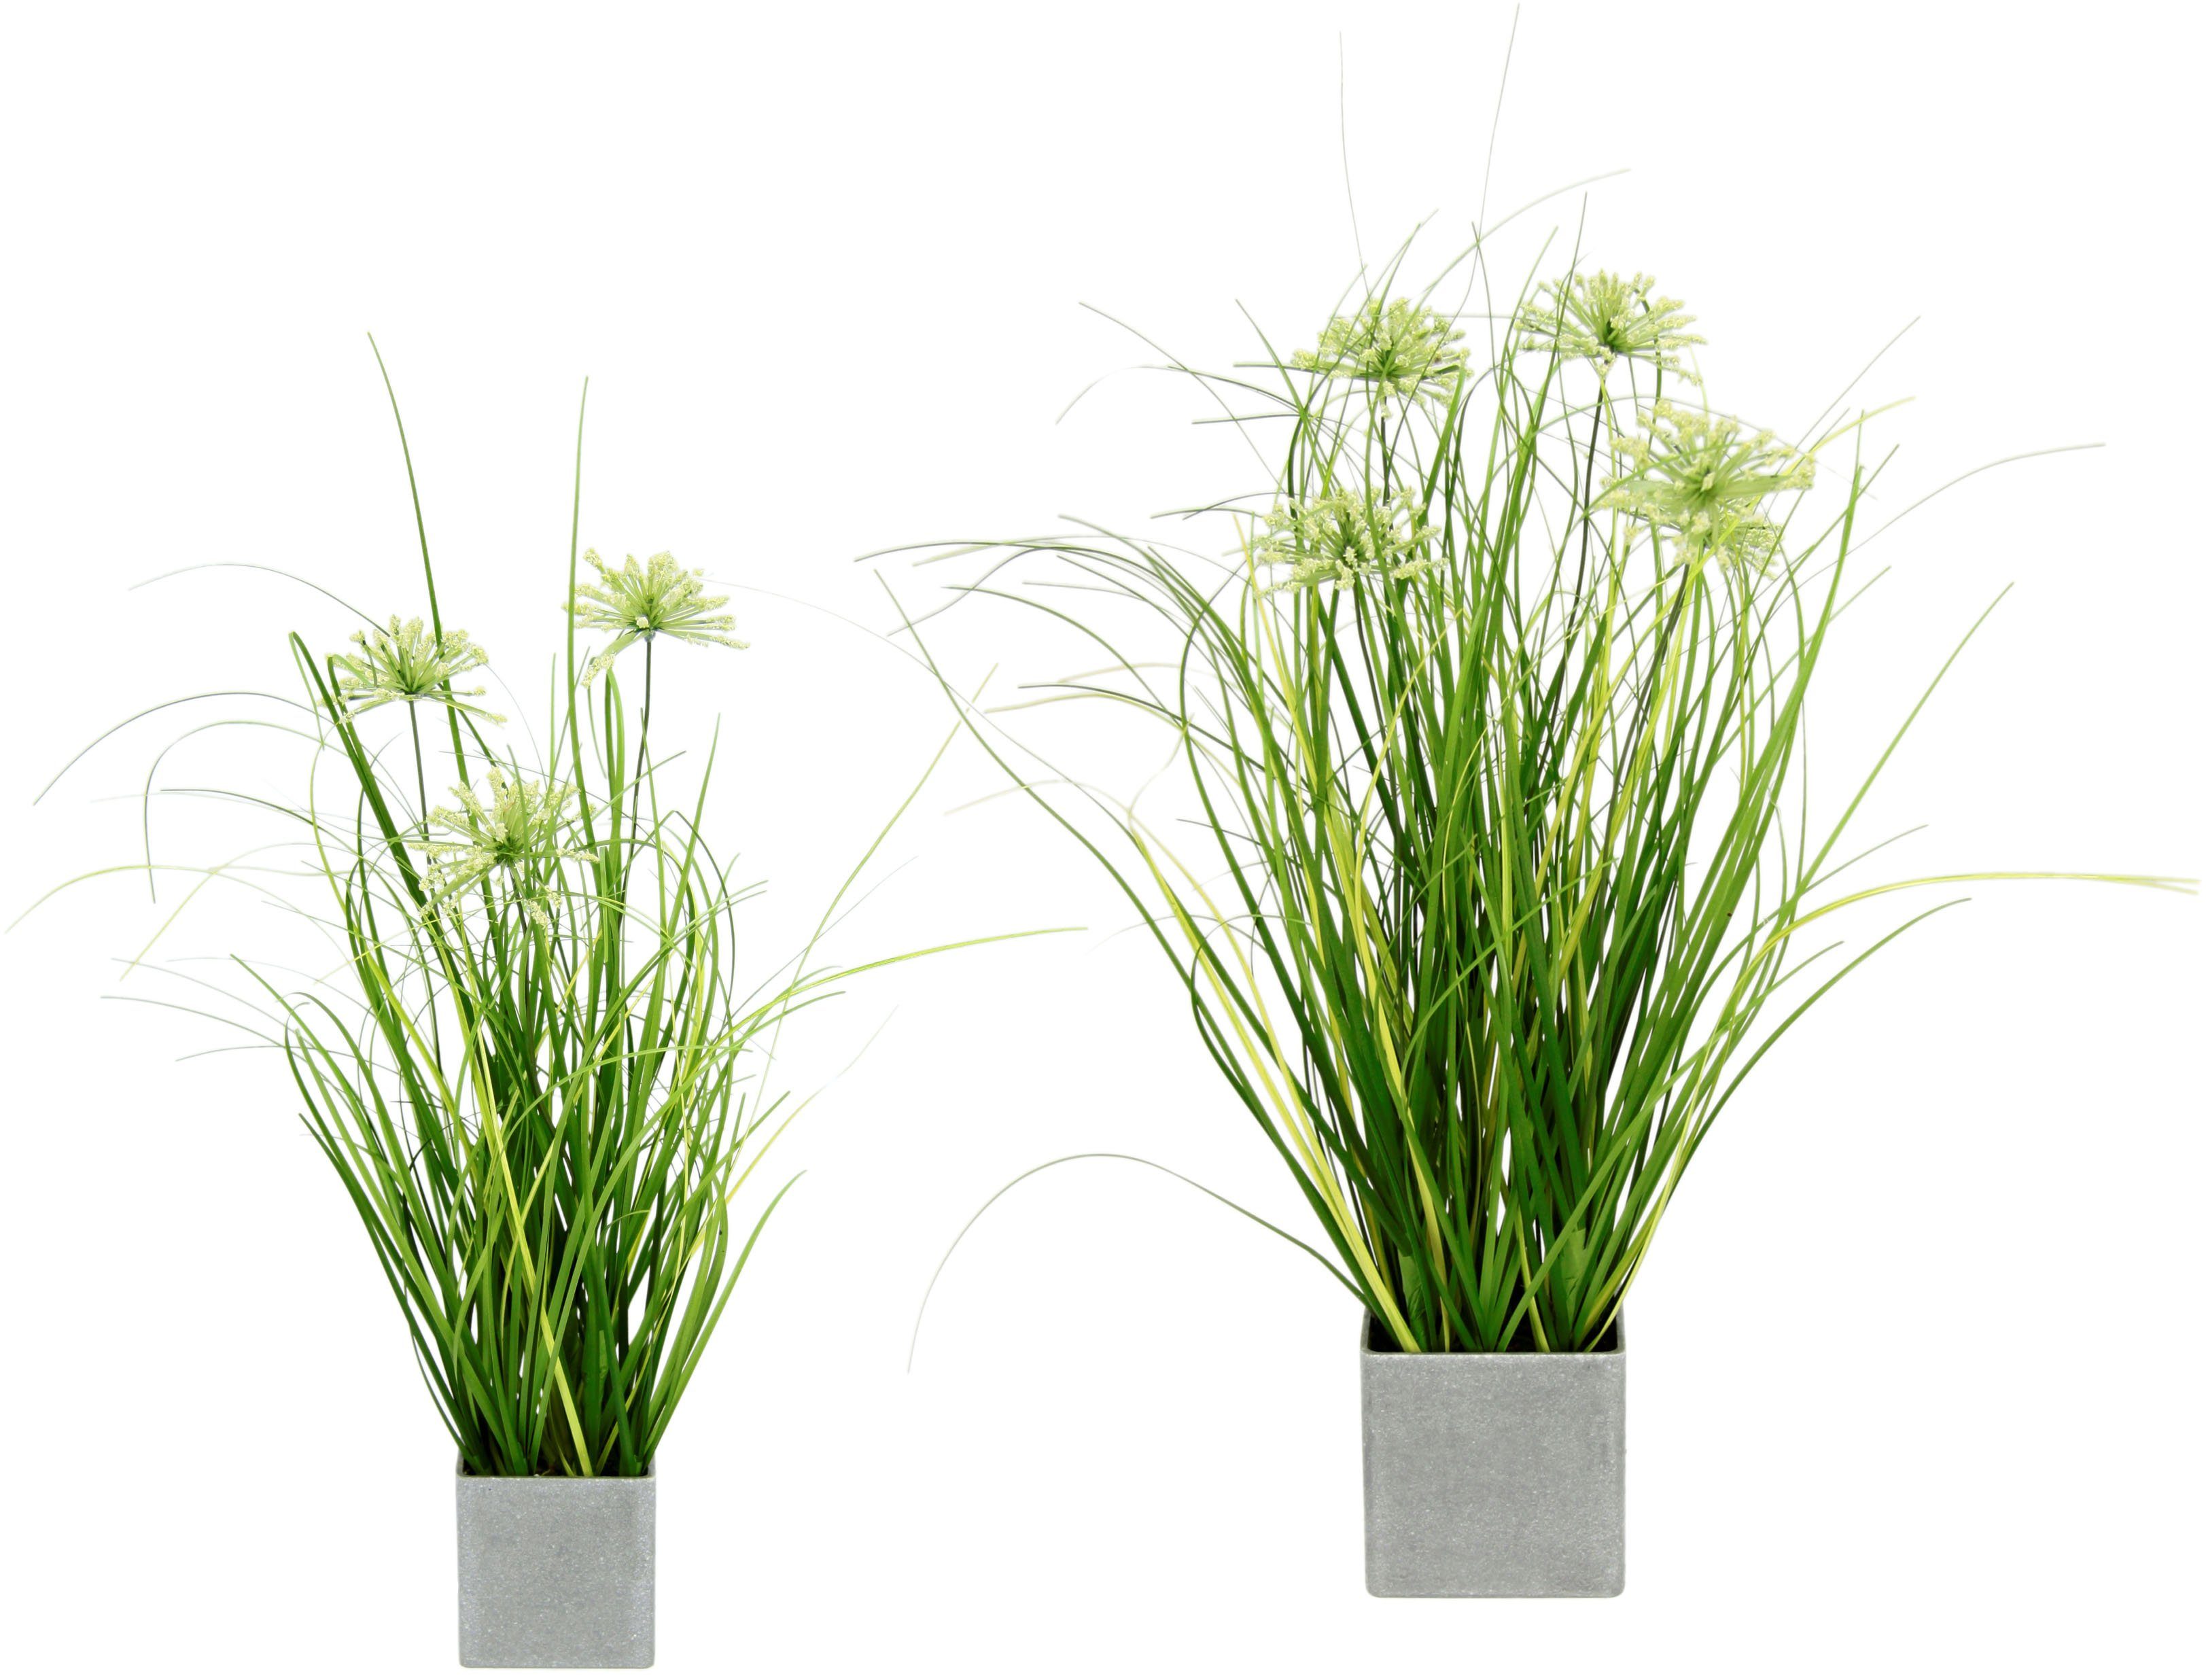 Kunstpflanze Gras, I.GE.A., Höhe 32 cm, 2er Set